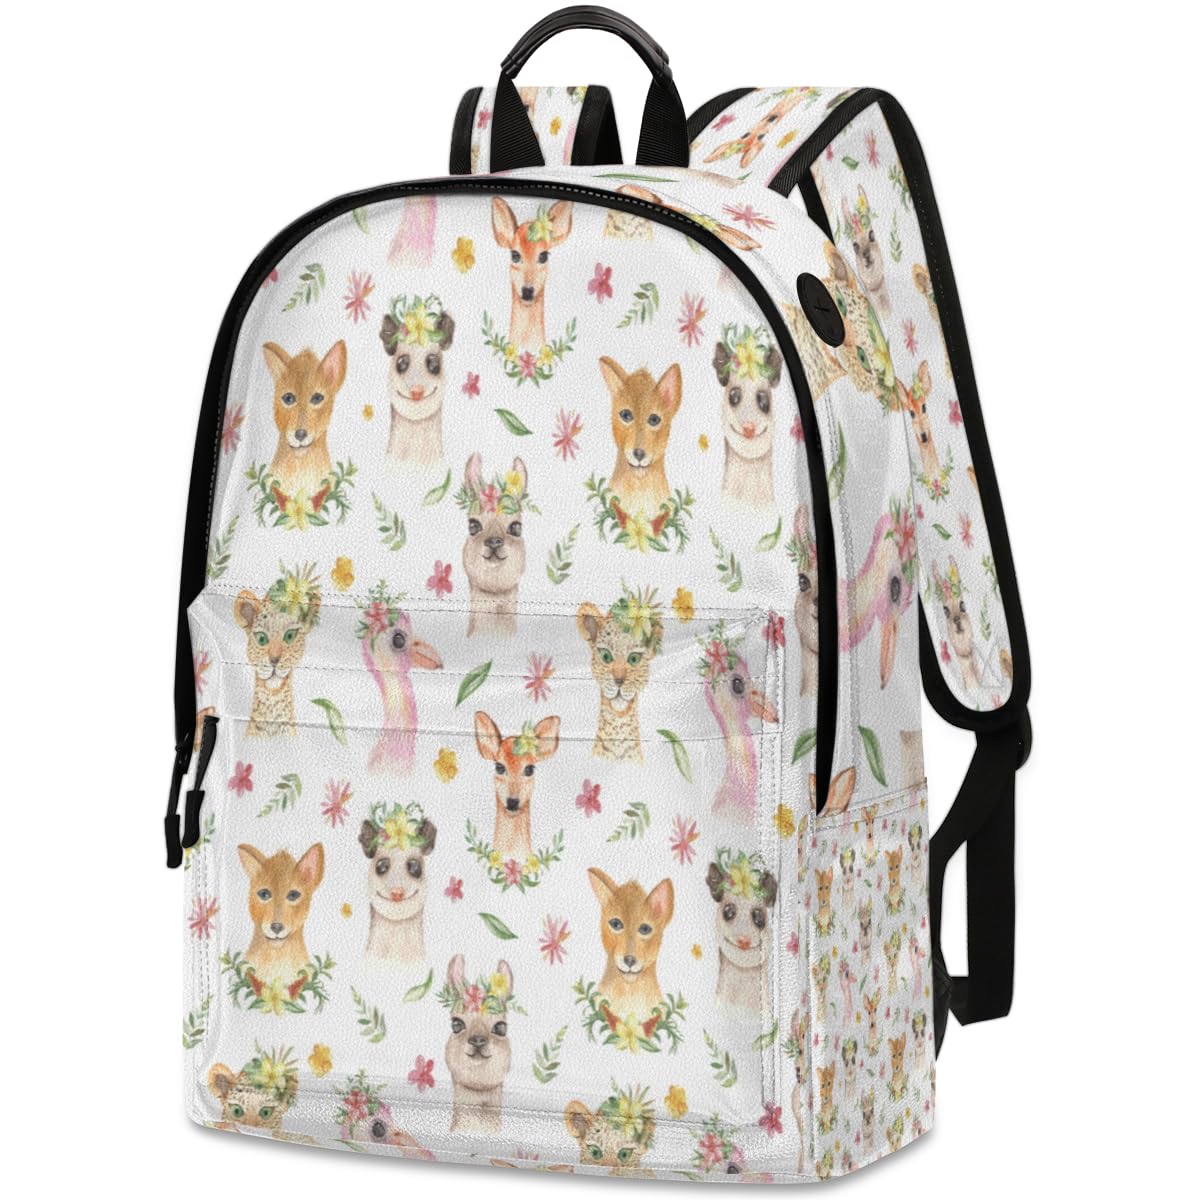 送料無料QsirBC Alpacas Possum Flamingo Leather Backpack for Women Laptop Backpack Zipper Closure Adjustable Strap Daypack